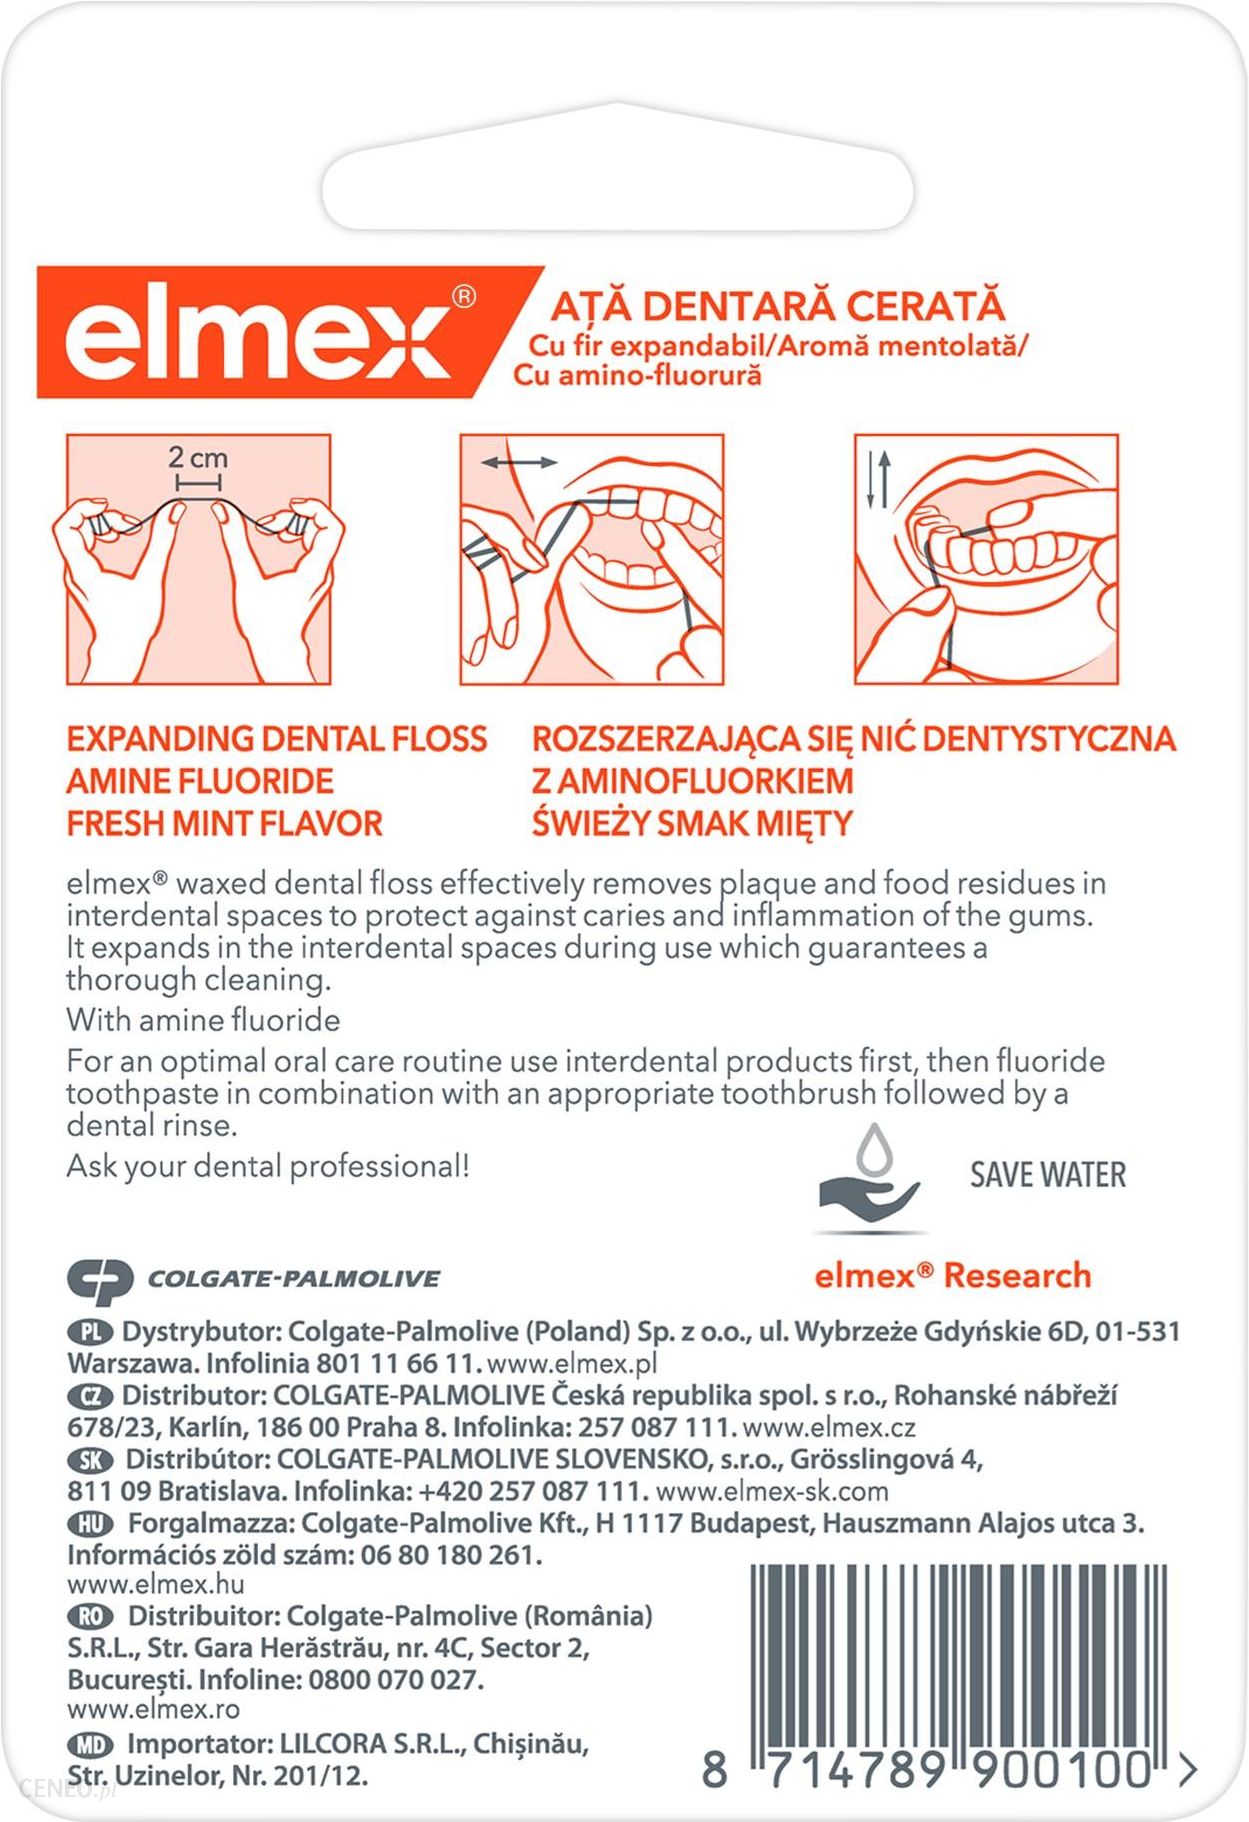 elmex nić dentystyczna woskowana 50 m